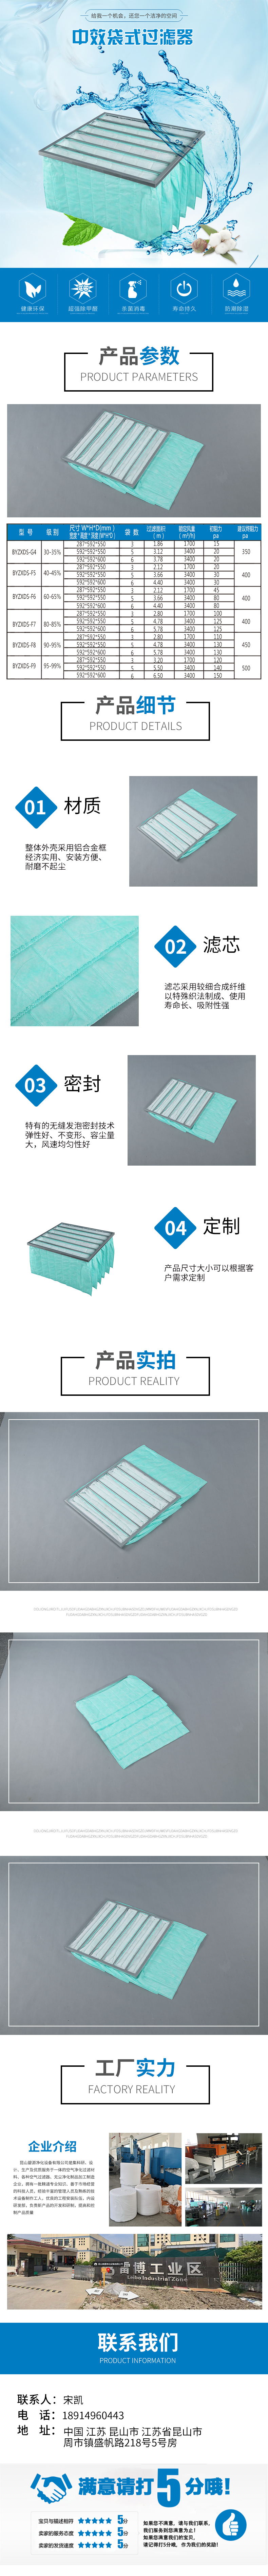 中效袋式乐动平台(中国)有限公司F6.jpg